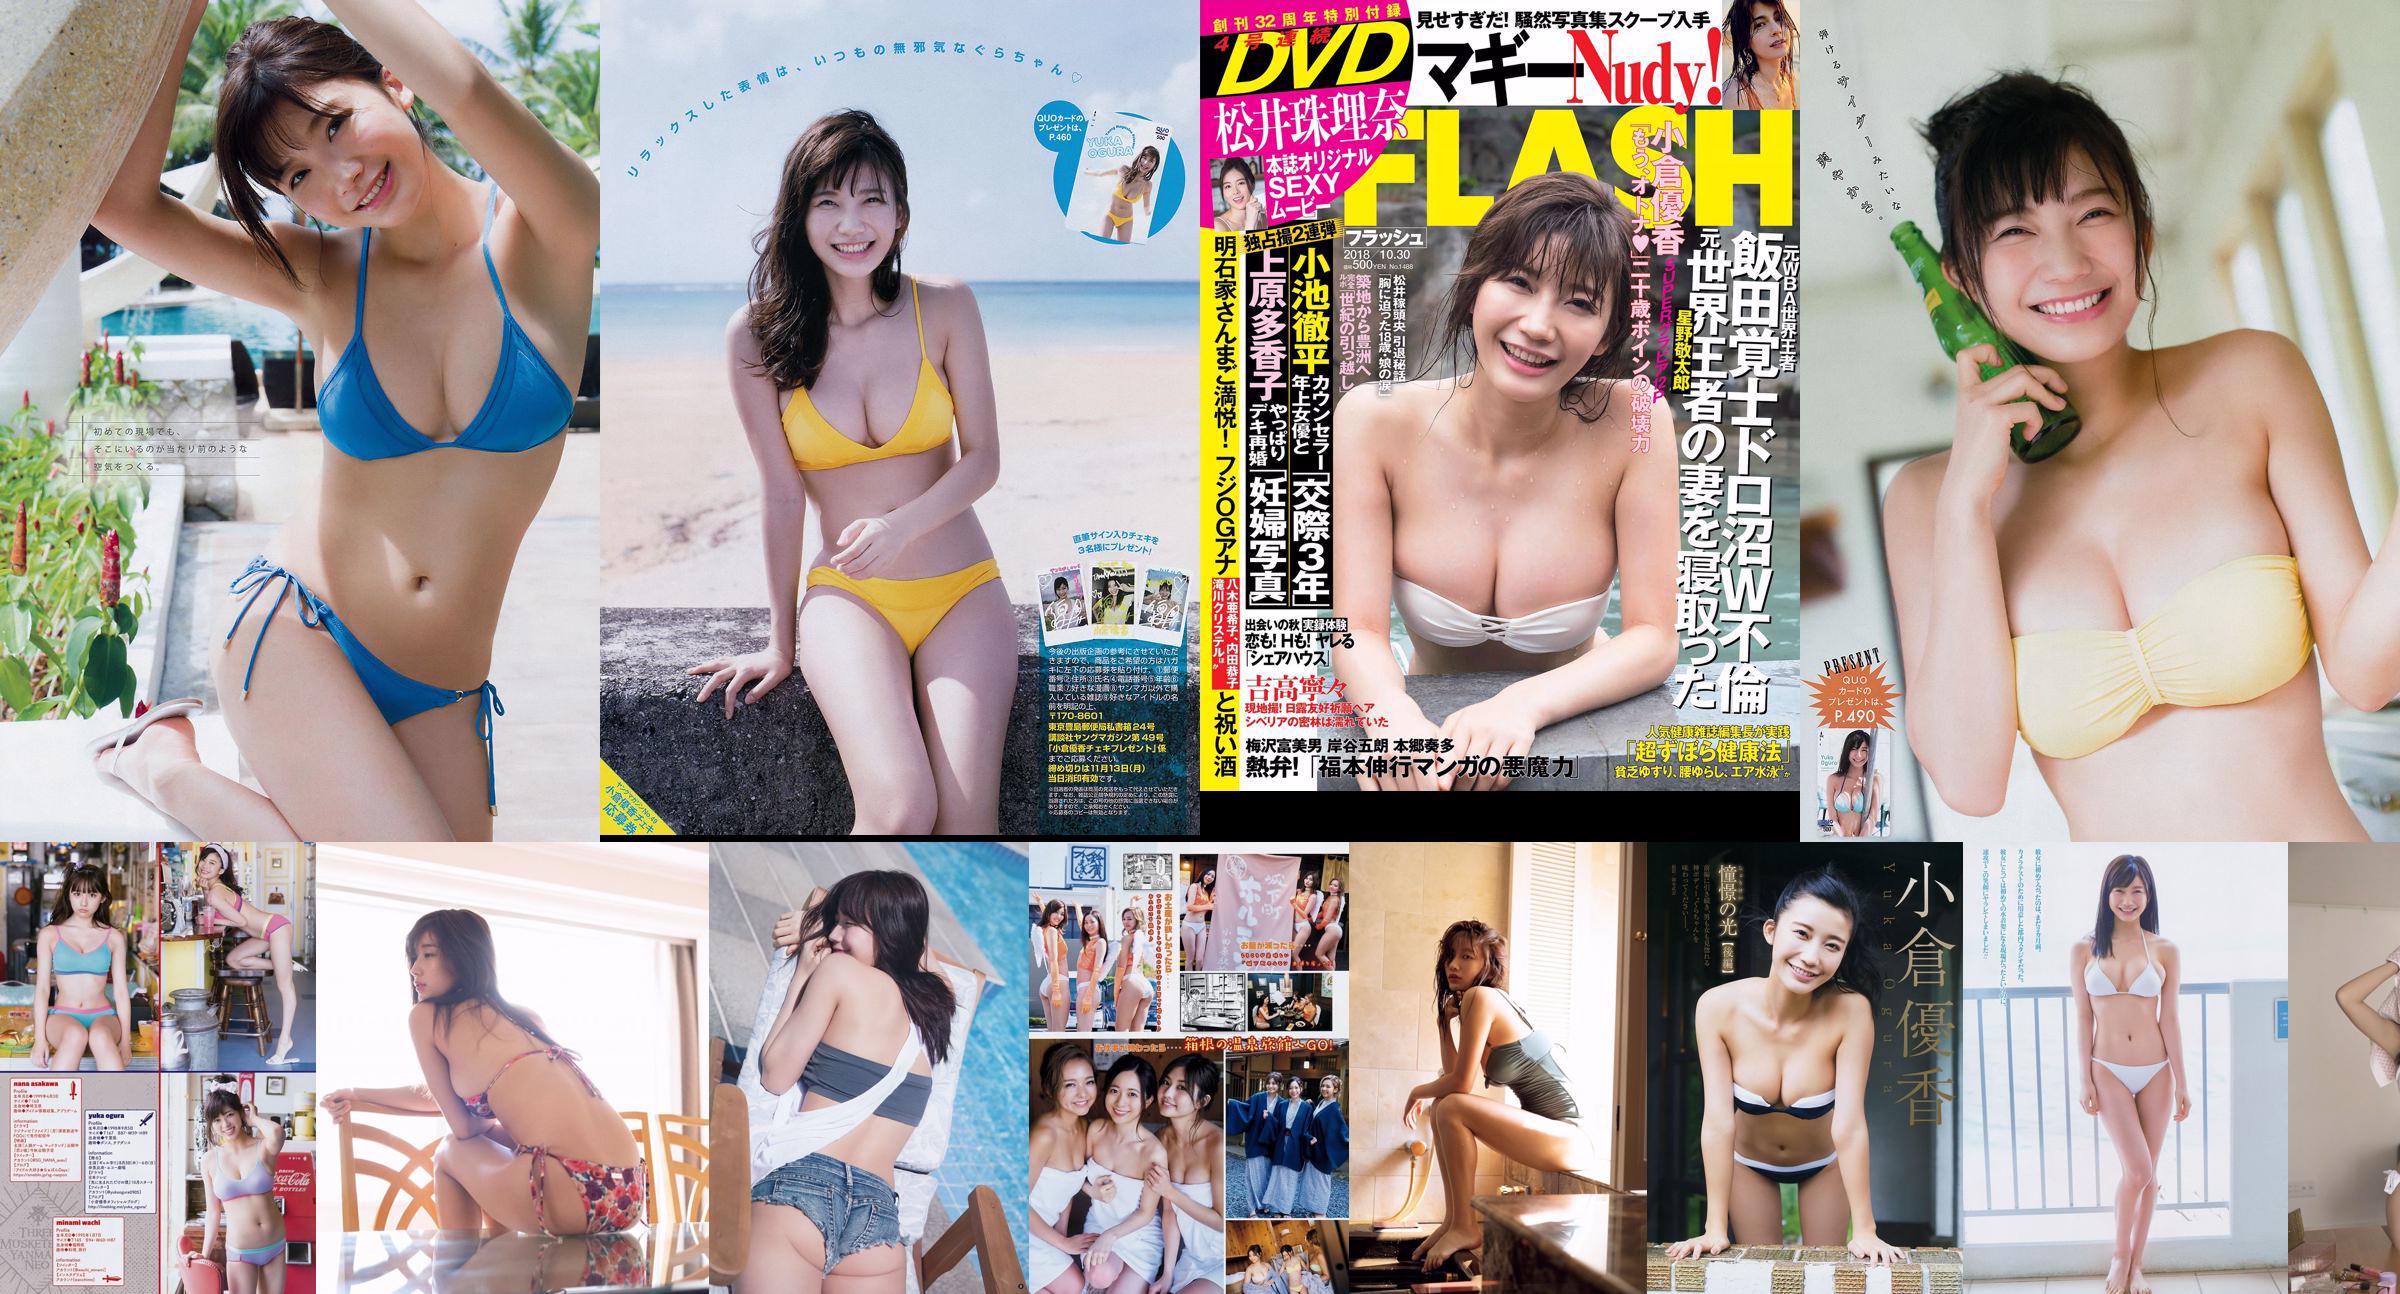 [FLASH] Tamari Matsui Arisa Deguchi Natsumi Hirashima Yui Imaizumi 2018.10.16-23照片 No.876efa 第1頁